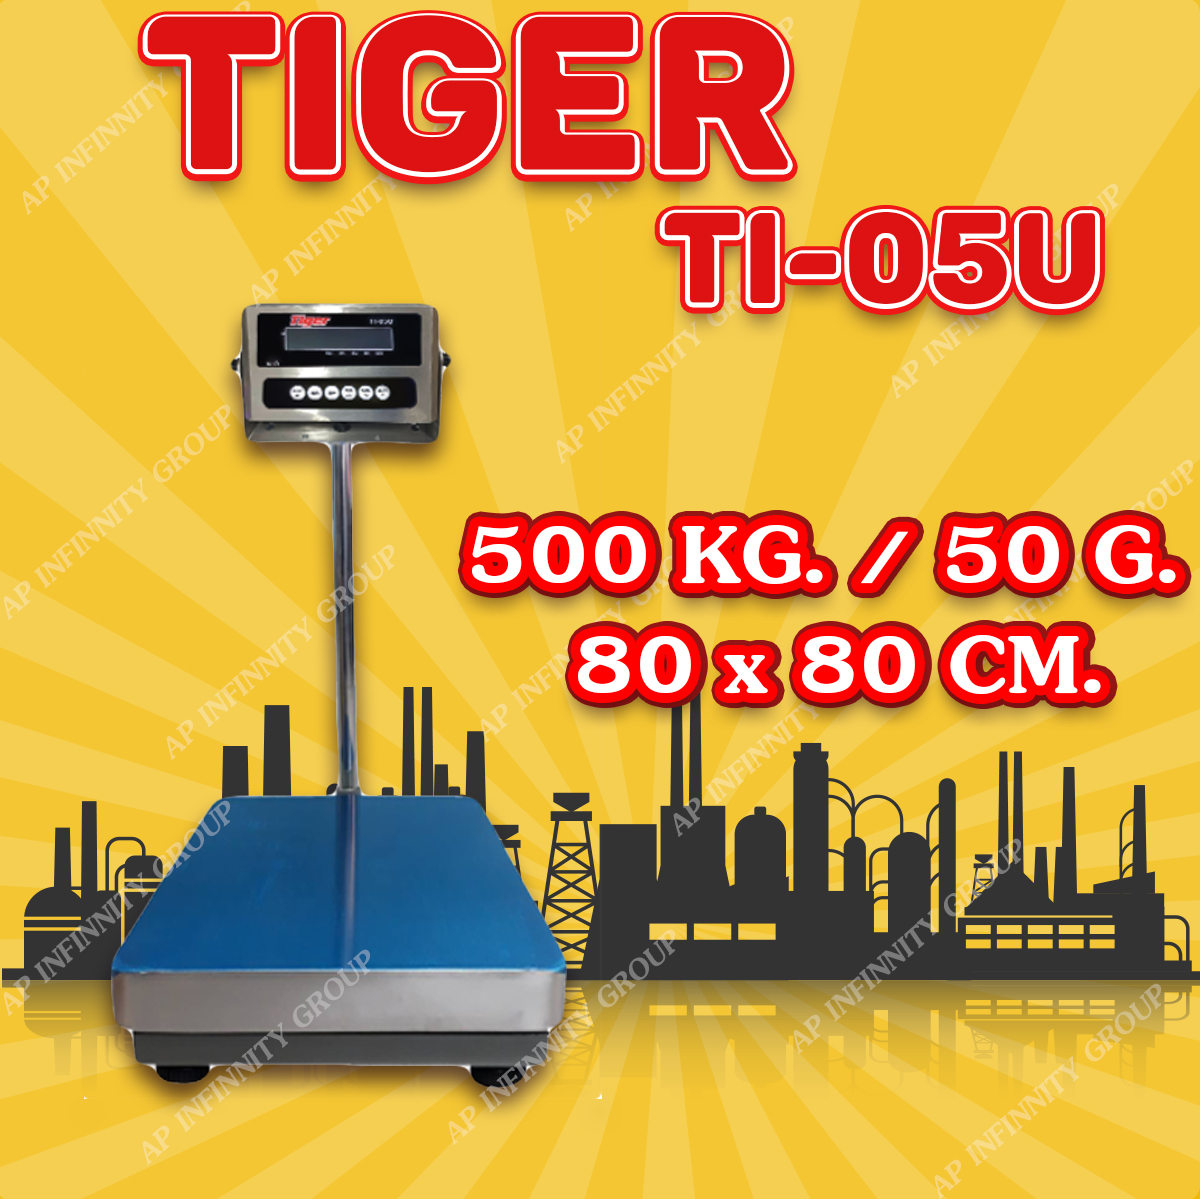 ตาชั่งดิจิตอล เครื่องชั่งดิจิตอล เครื่องชั่งตั้งพื้น 500kg ความละเอียด 50g ยี่ห้อ Tiger รุ่น TI–05U แท่นชั่งขนาดฐาน 80x80cm มีช่อง USB สำหรับการบันทึกข้อมูลได้ รูปที่ 1